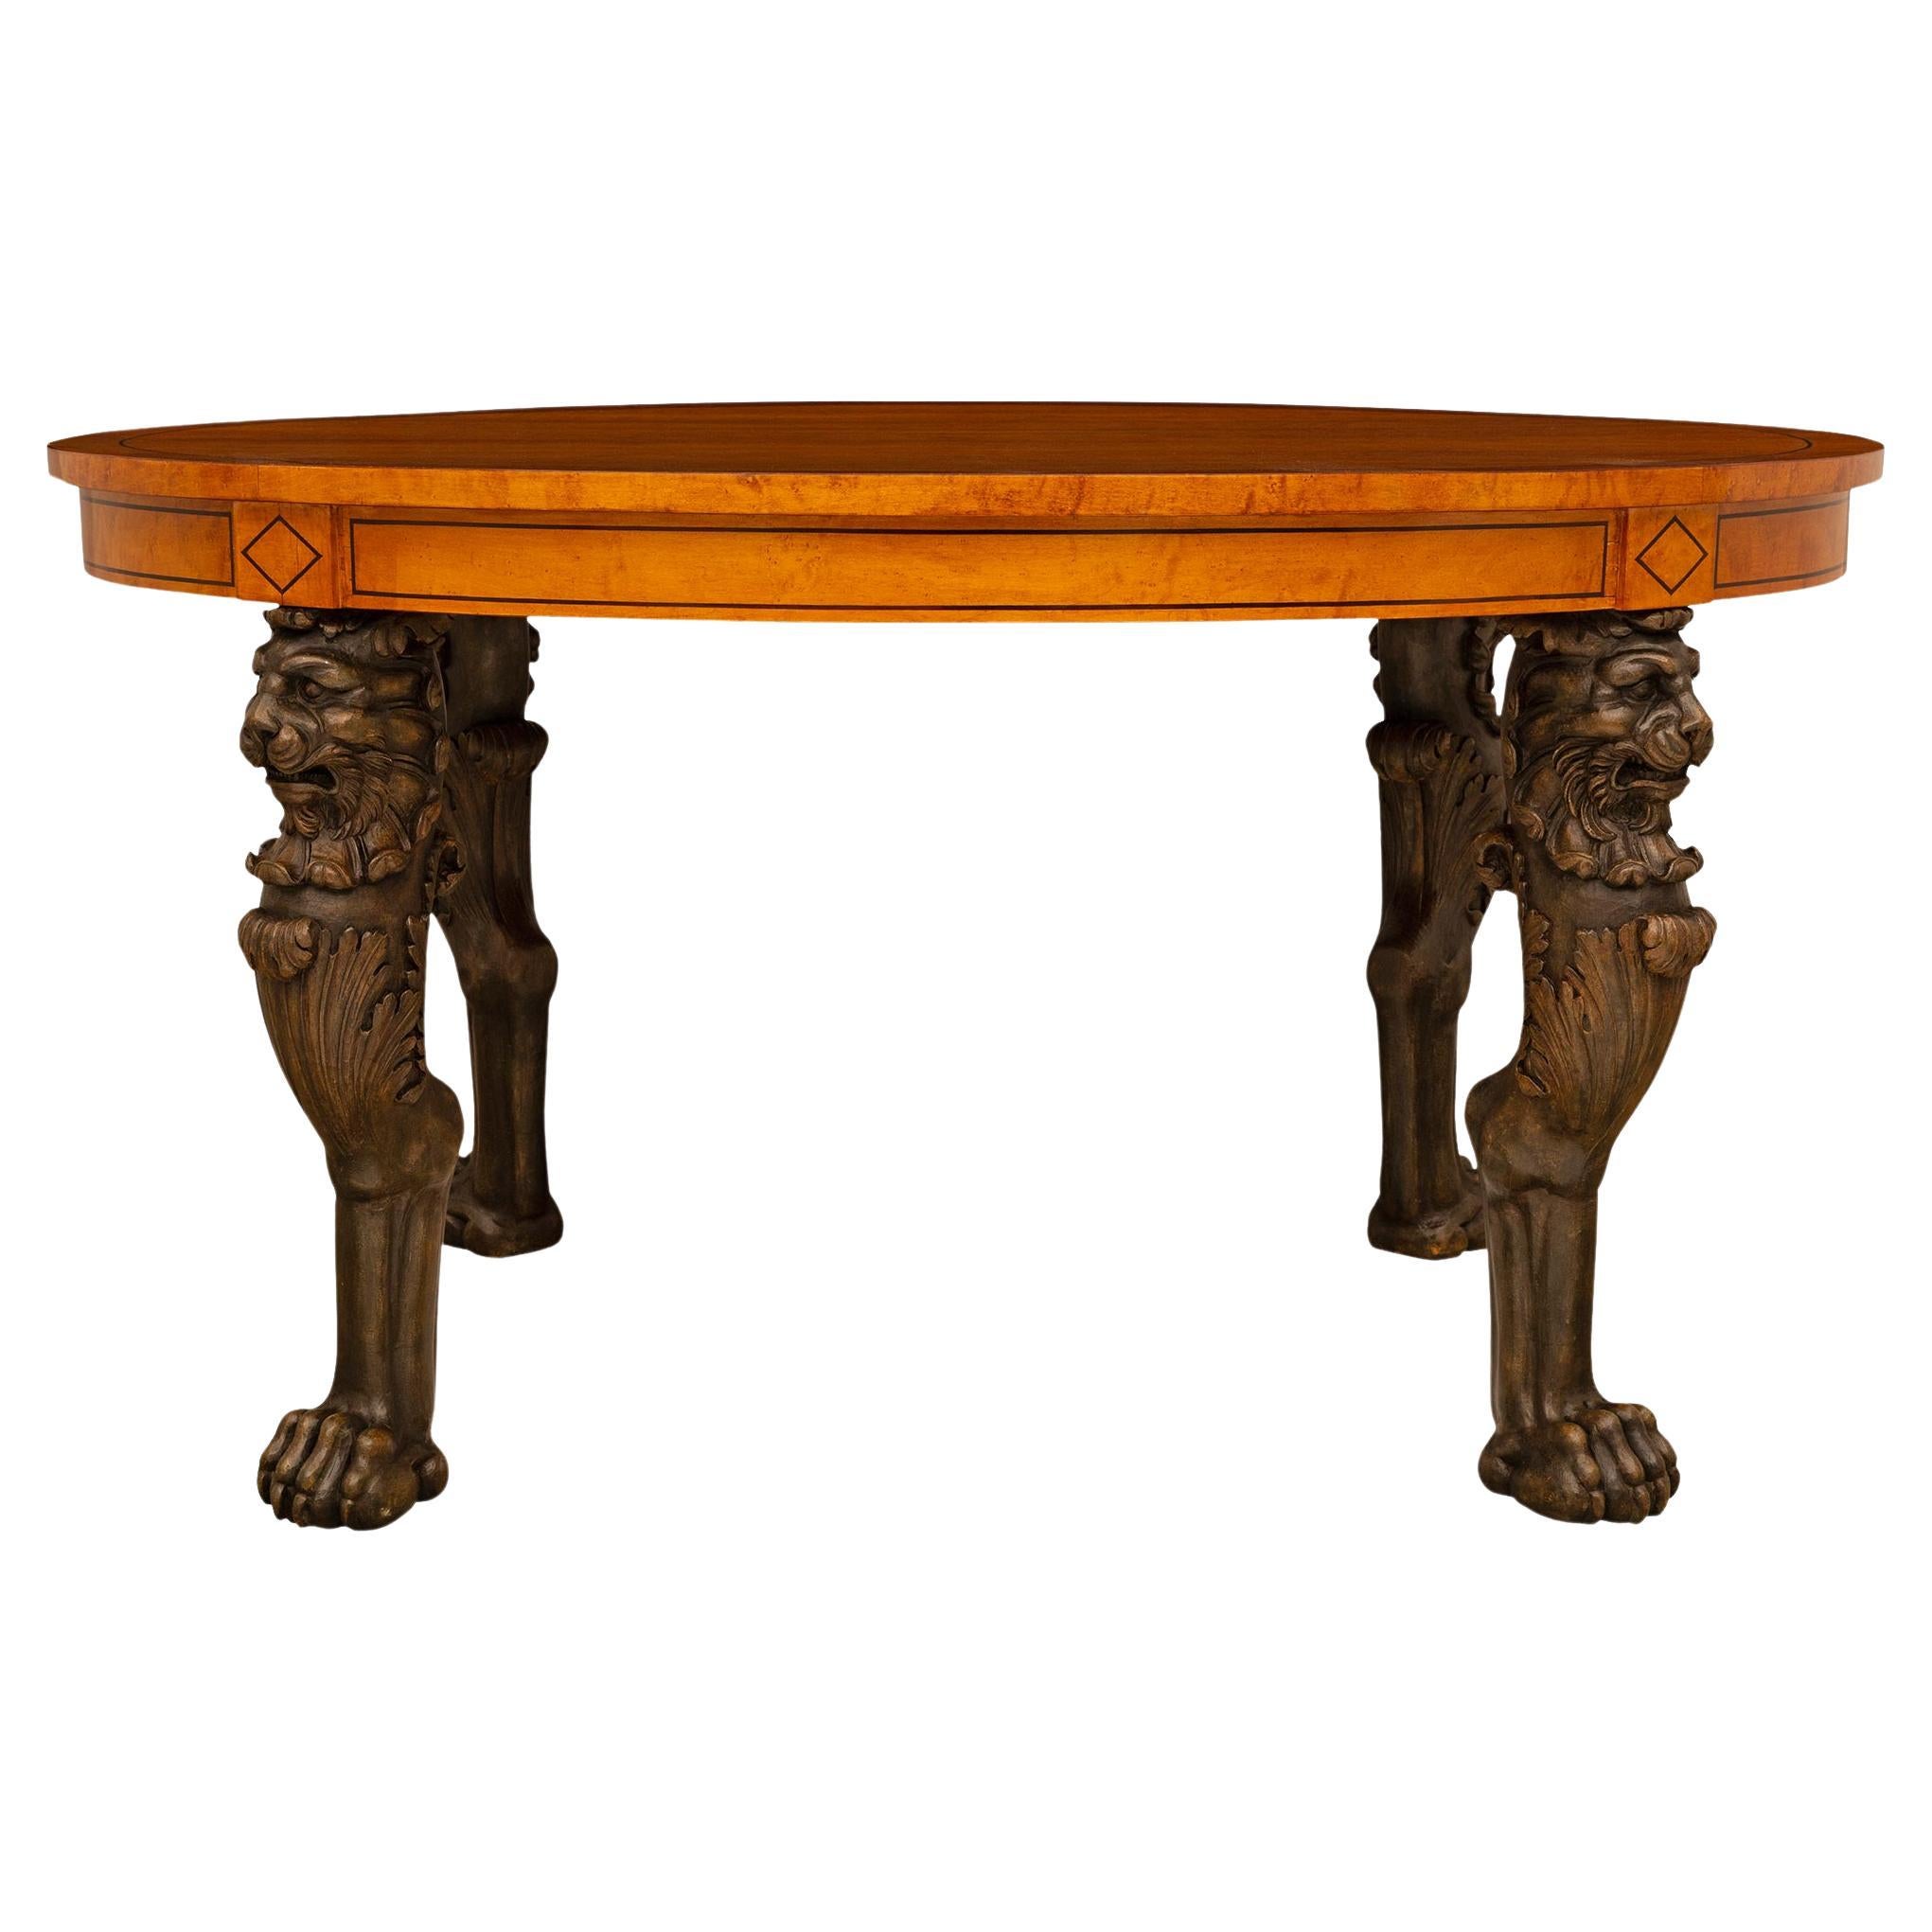 Table centrale française de style Empire du XIXe siècle en bois citron et patiné